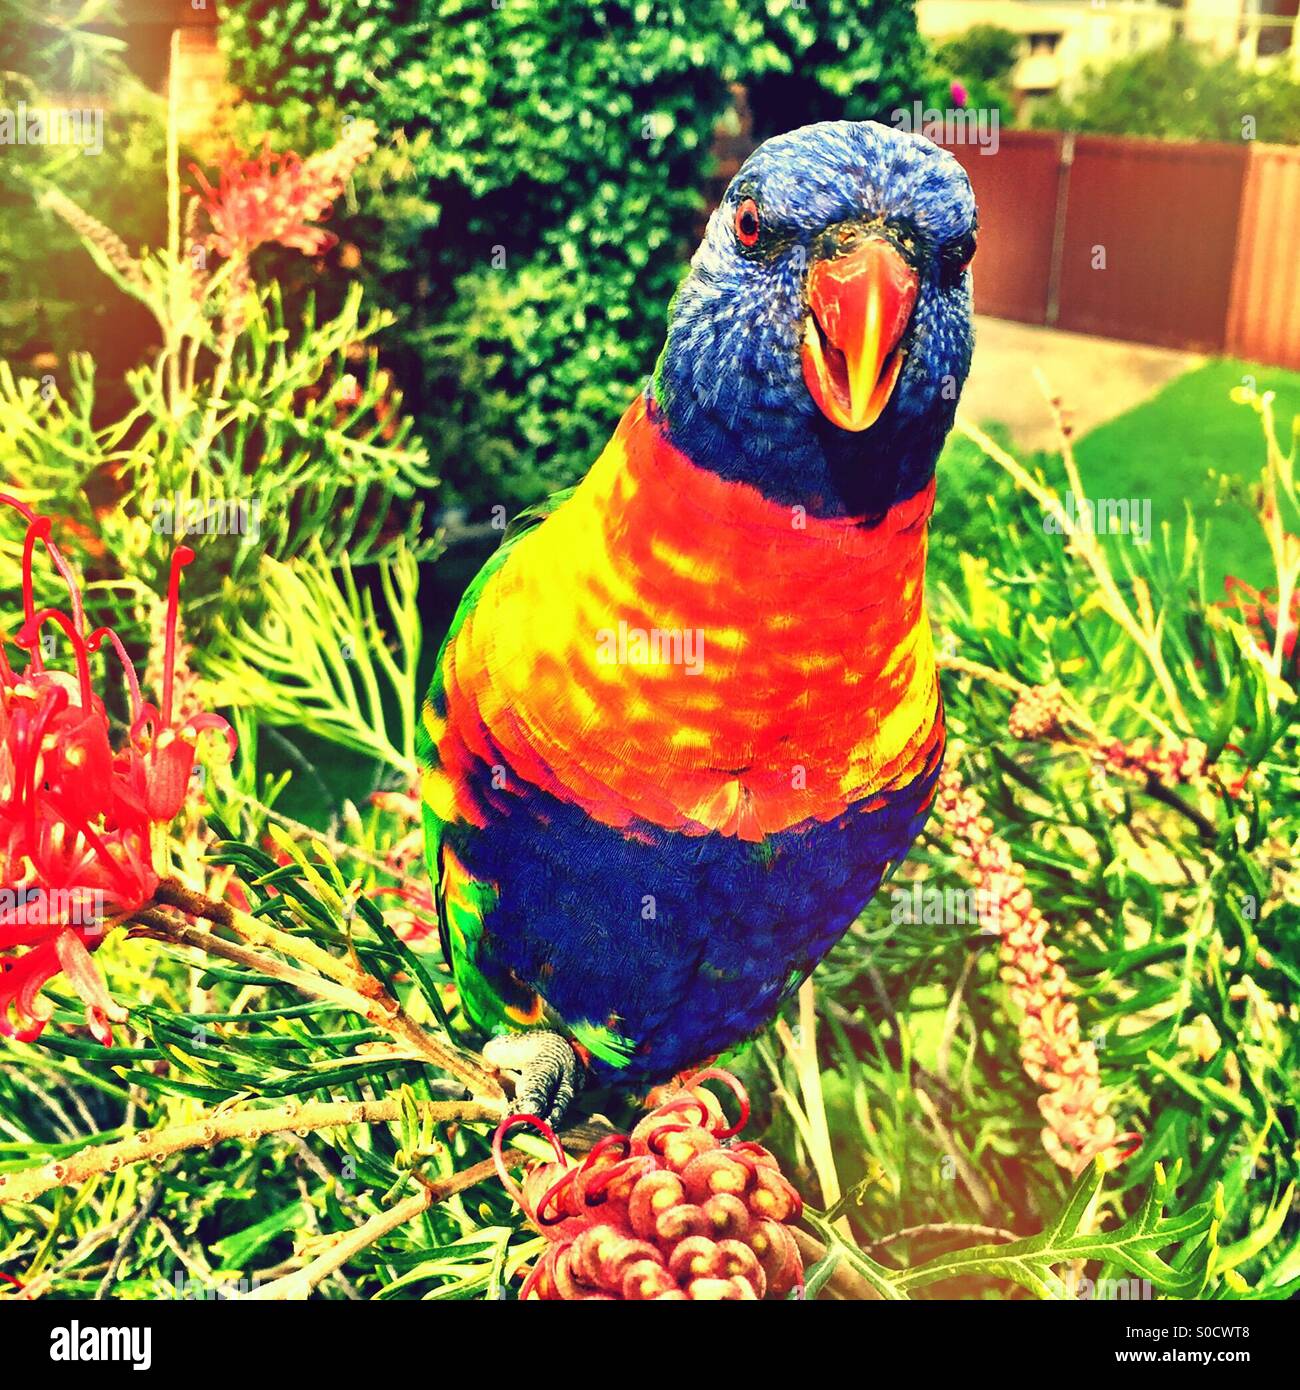 A Rainbow Lorikeet in the garden Stock Photo